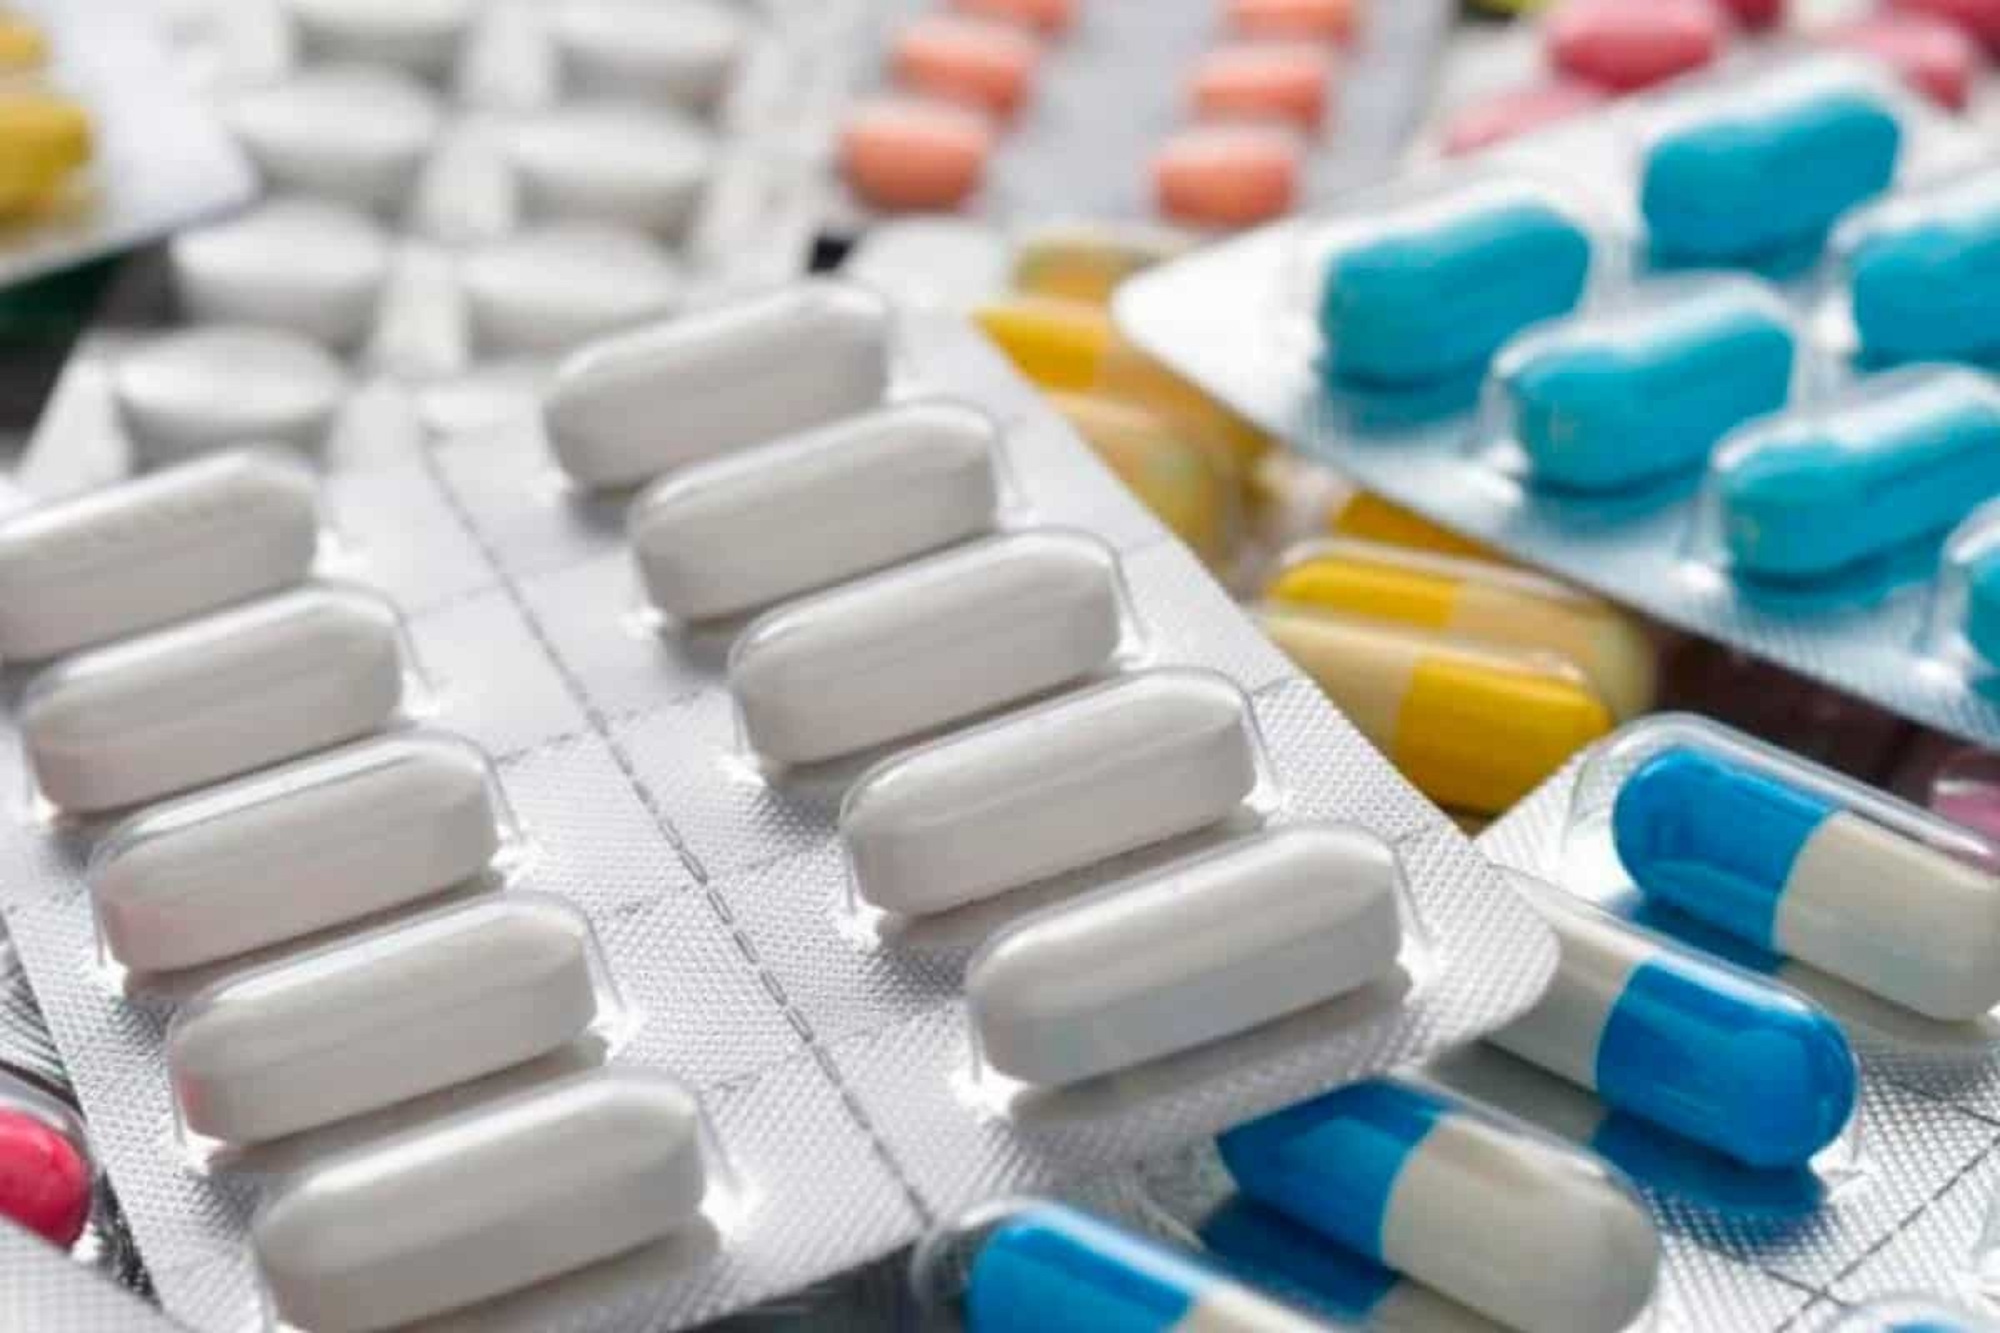 ΠΑΜΕ: Όχι στις αυξήσεις των φαρμάκων – Αγώνας τώρα για δωρεάν φάρμακα για το λαό